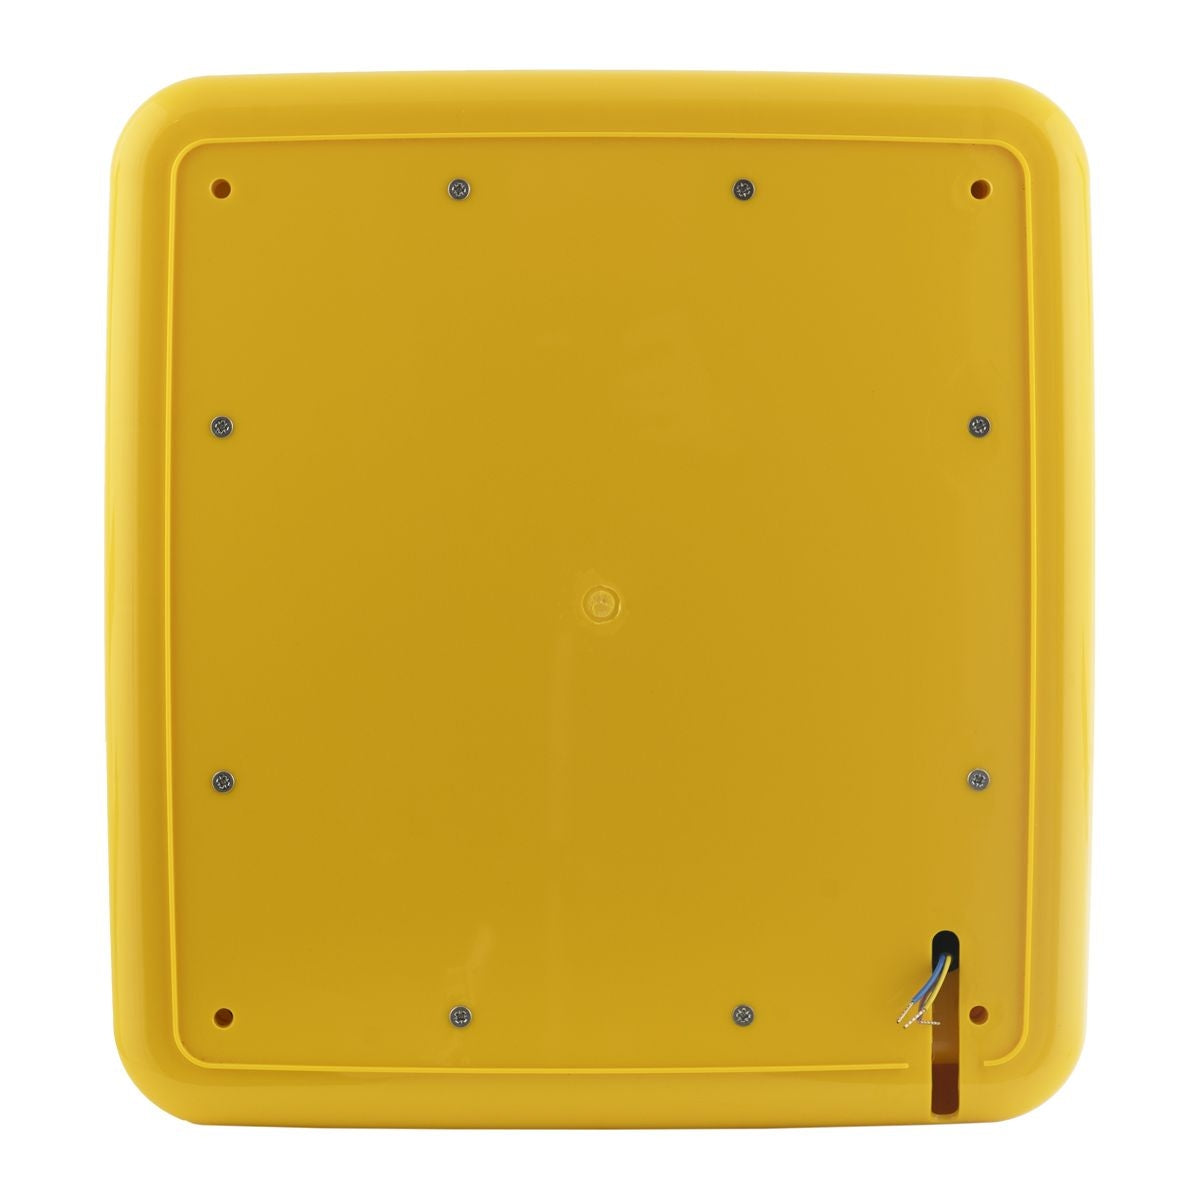 Defibstore 4000 - Defib Cabinet w/ Heater & Light - Unlocked - Yellow